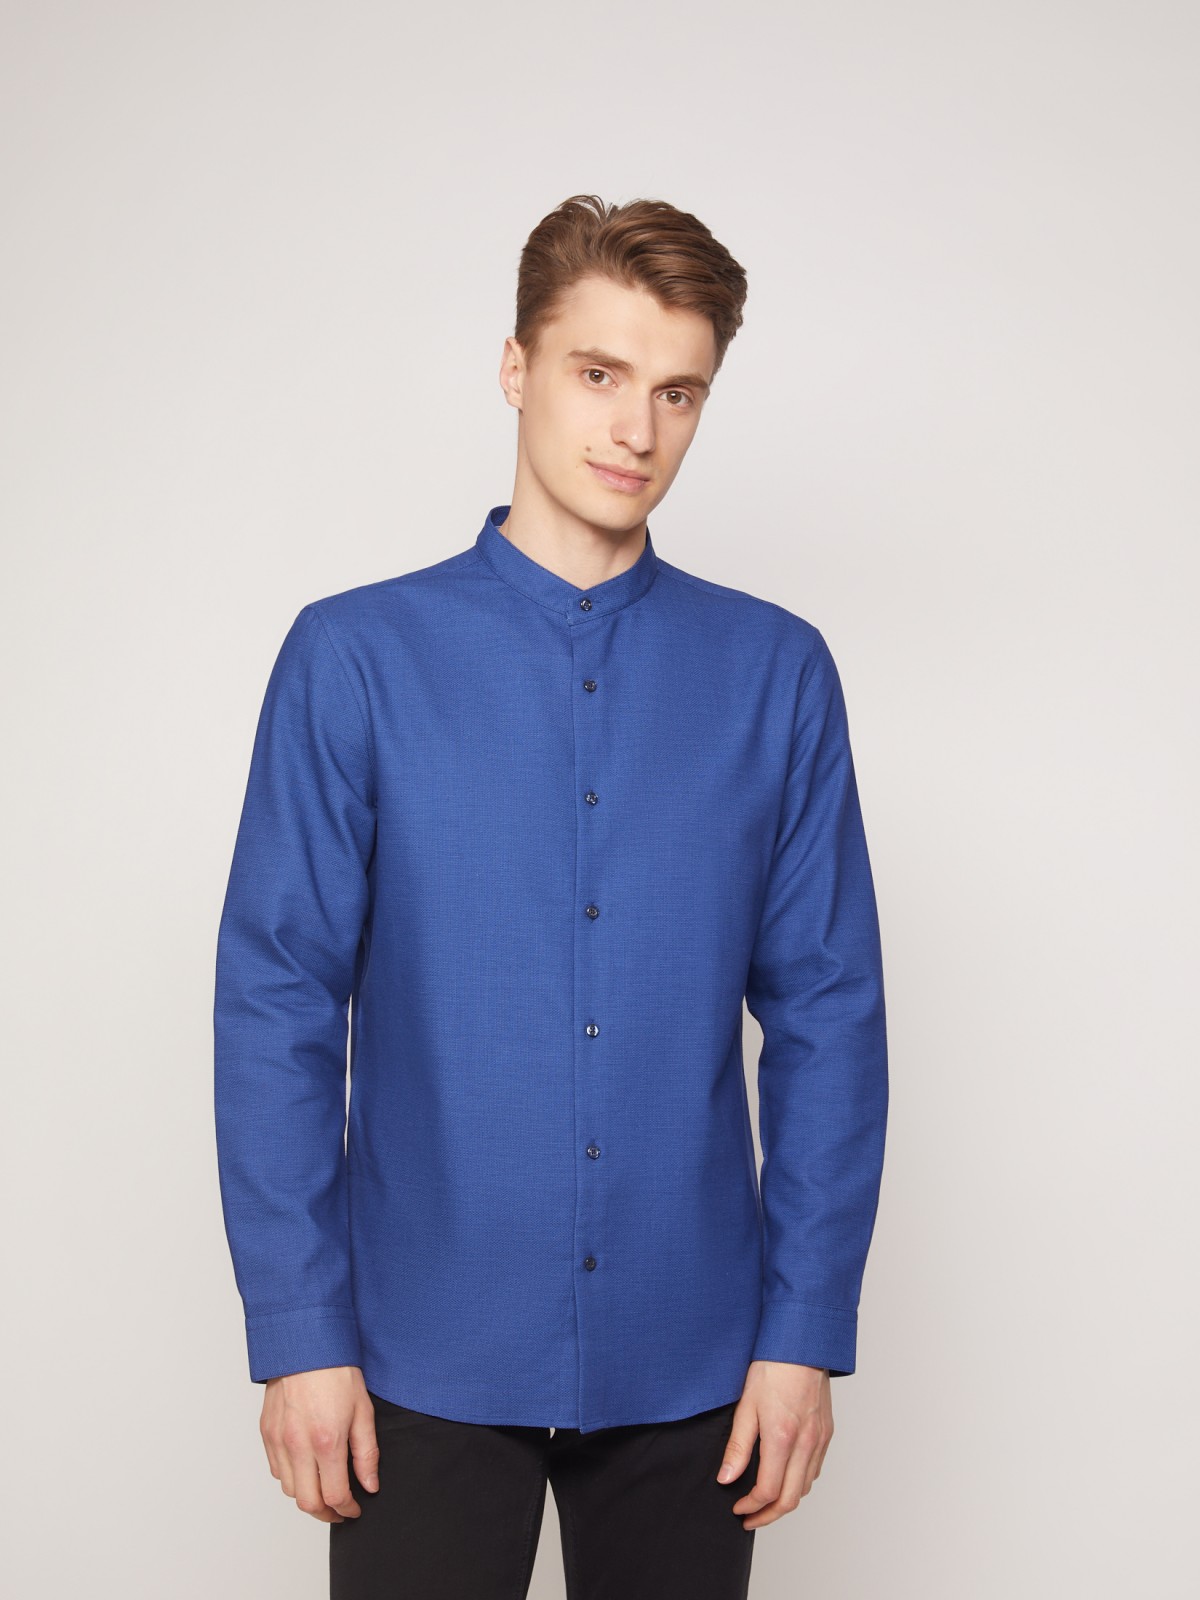 Рубашка с воротником-стойкой zolla 011322159053, цвет голубой, размер S - фото 2